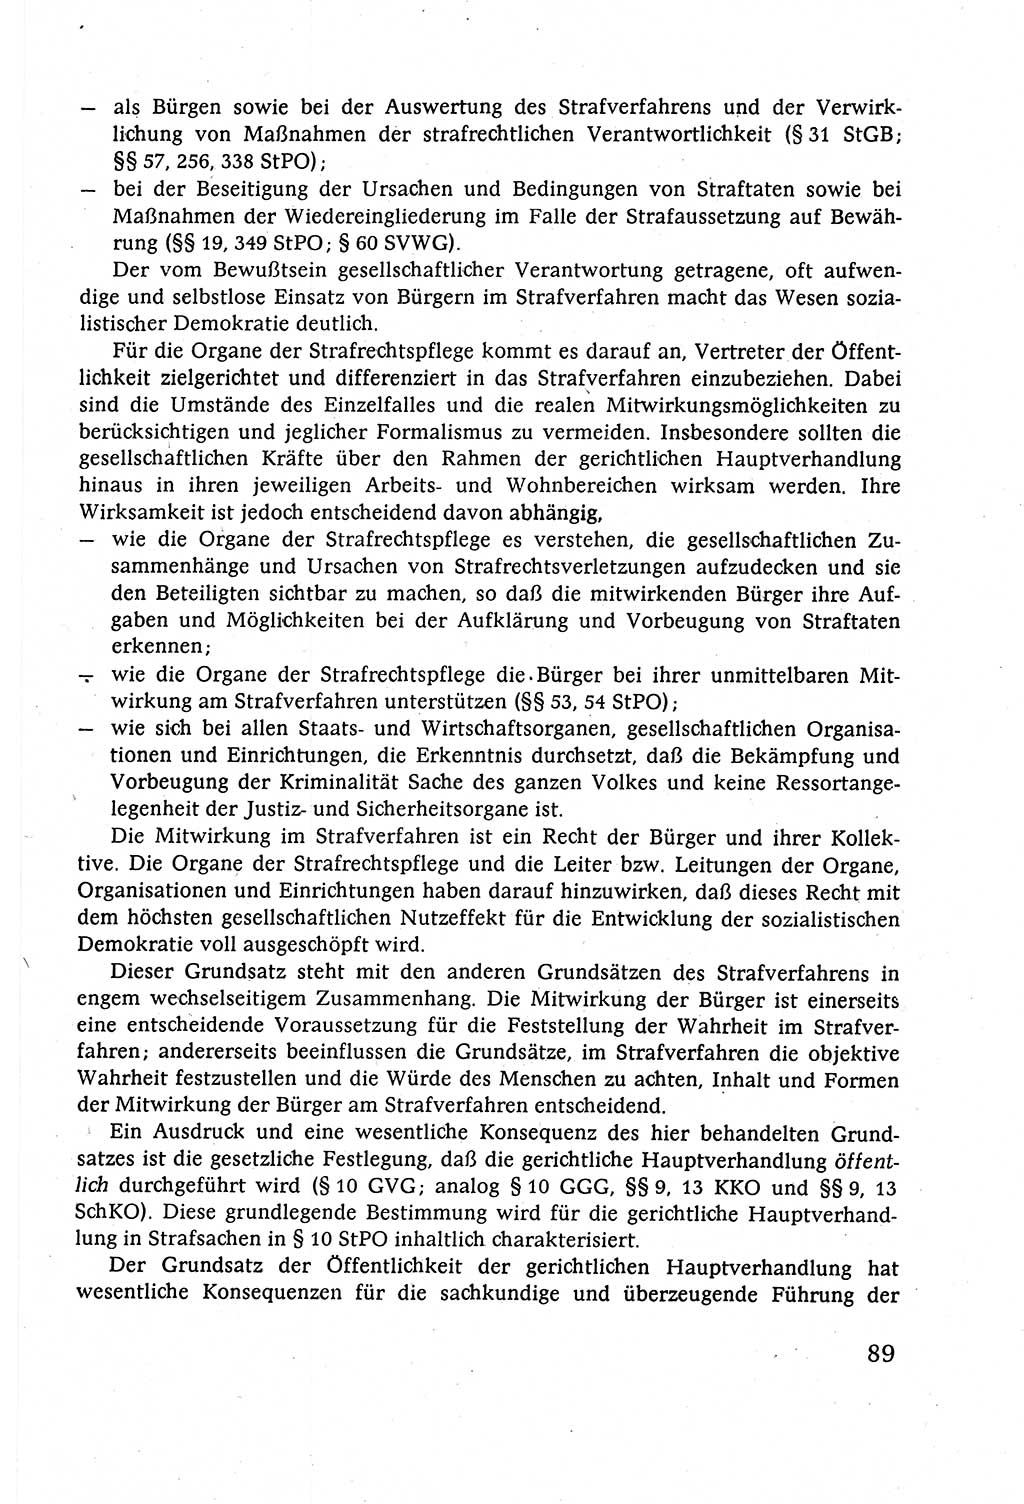 Strafverfahrensrecht [Deutsche Demokratische Republik (DDR)], Lehrbuch 1977, Seite 89 (Strafverf.-R. DDR Lb. 1977, S. 89)